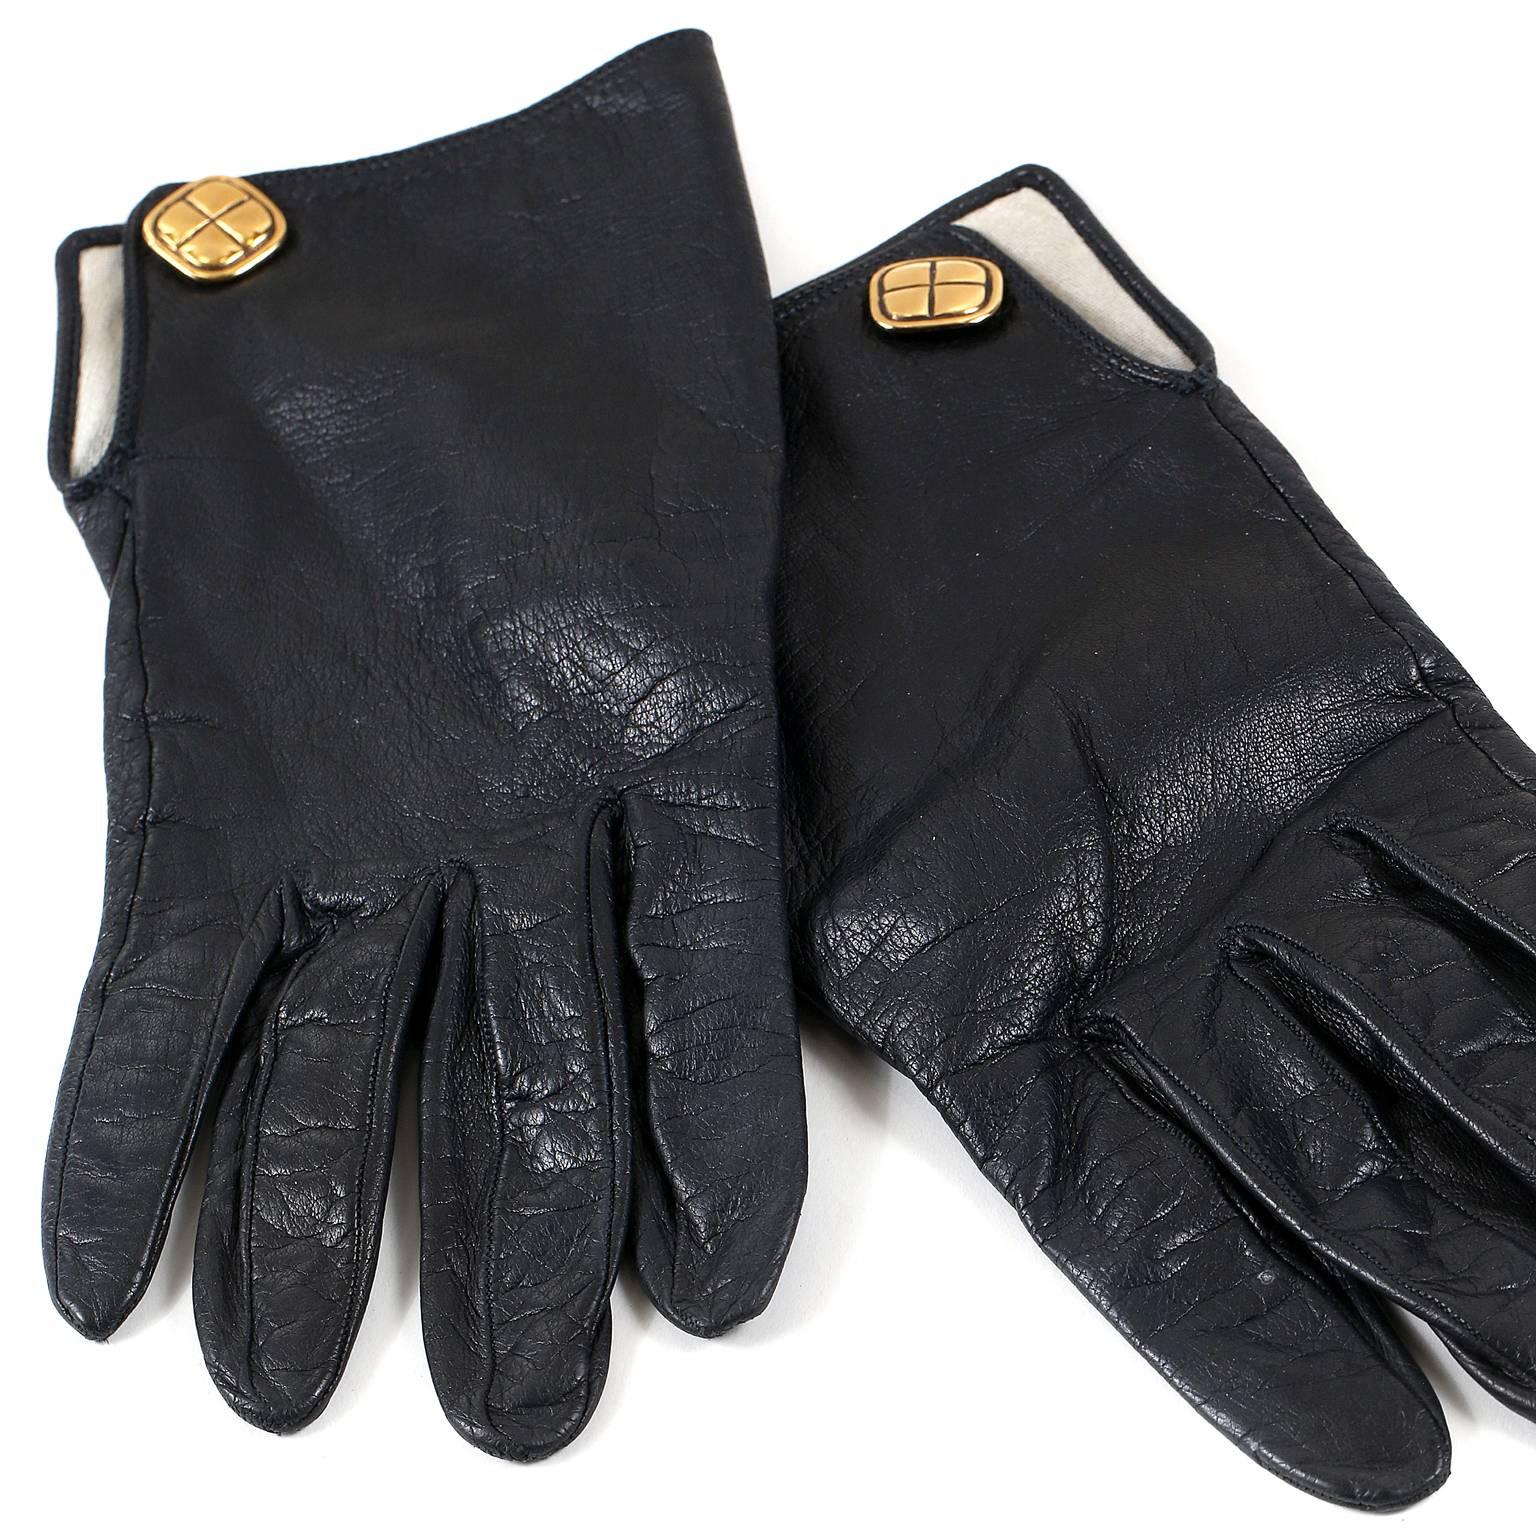 Chanel Black Leather Gloves sind in ausgezeichnetem Zustand.  Schlicht und elegant, sind sie eine großartige Ergänzung für jede Sammlung. 

Schwarze ledergefütterte Damenhandschuhe mit goldfarbener Hardware.  Größe 7.
A208